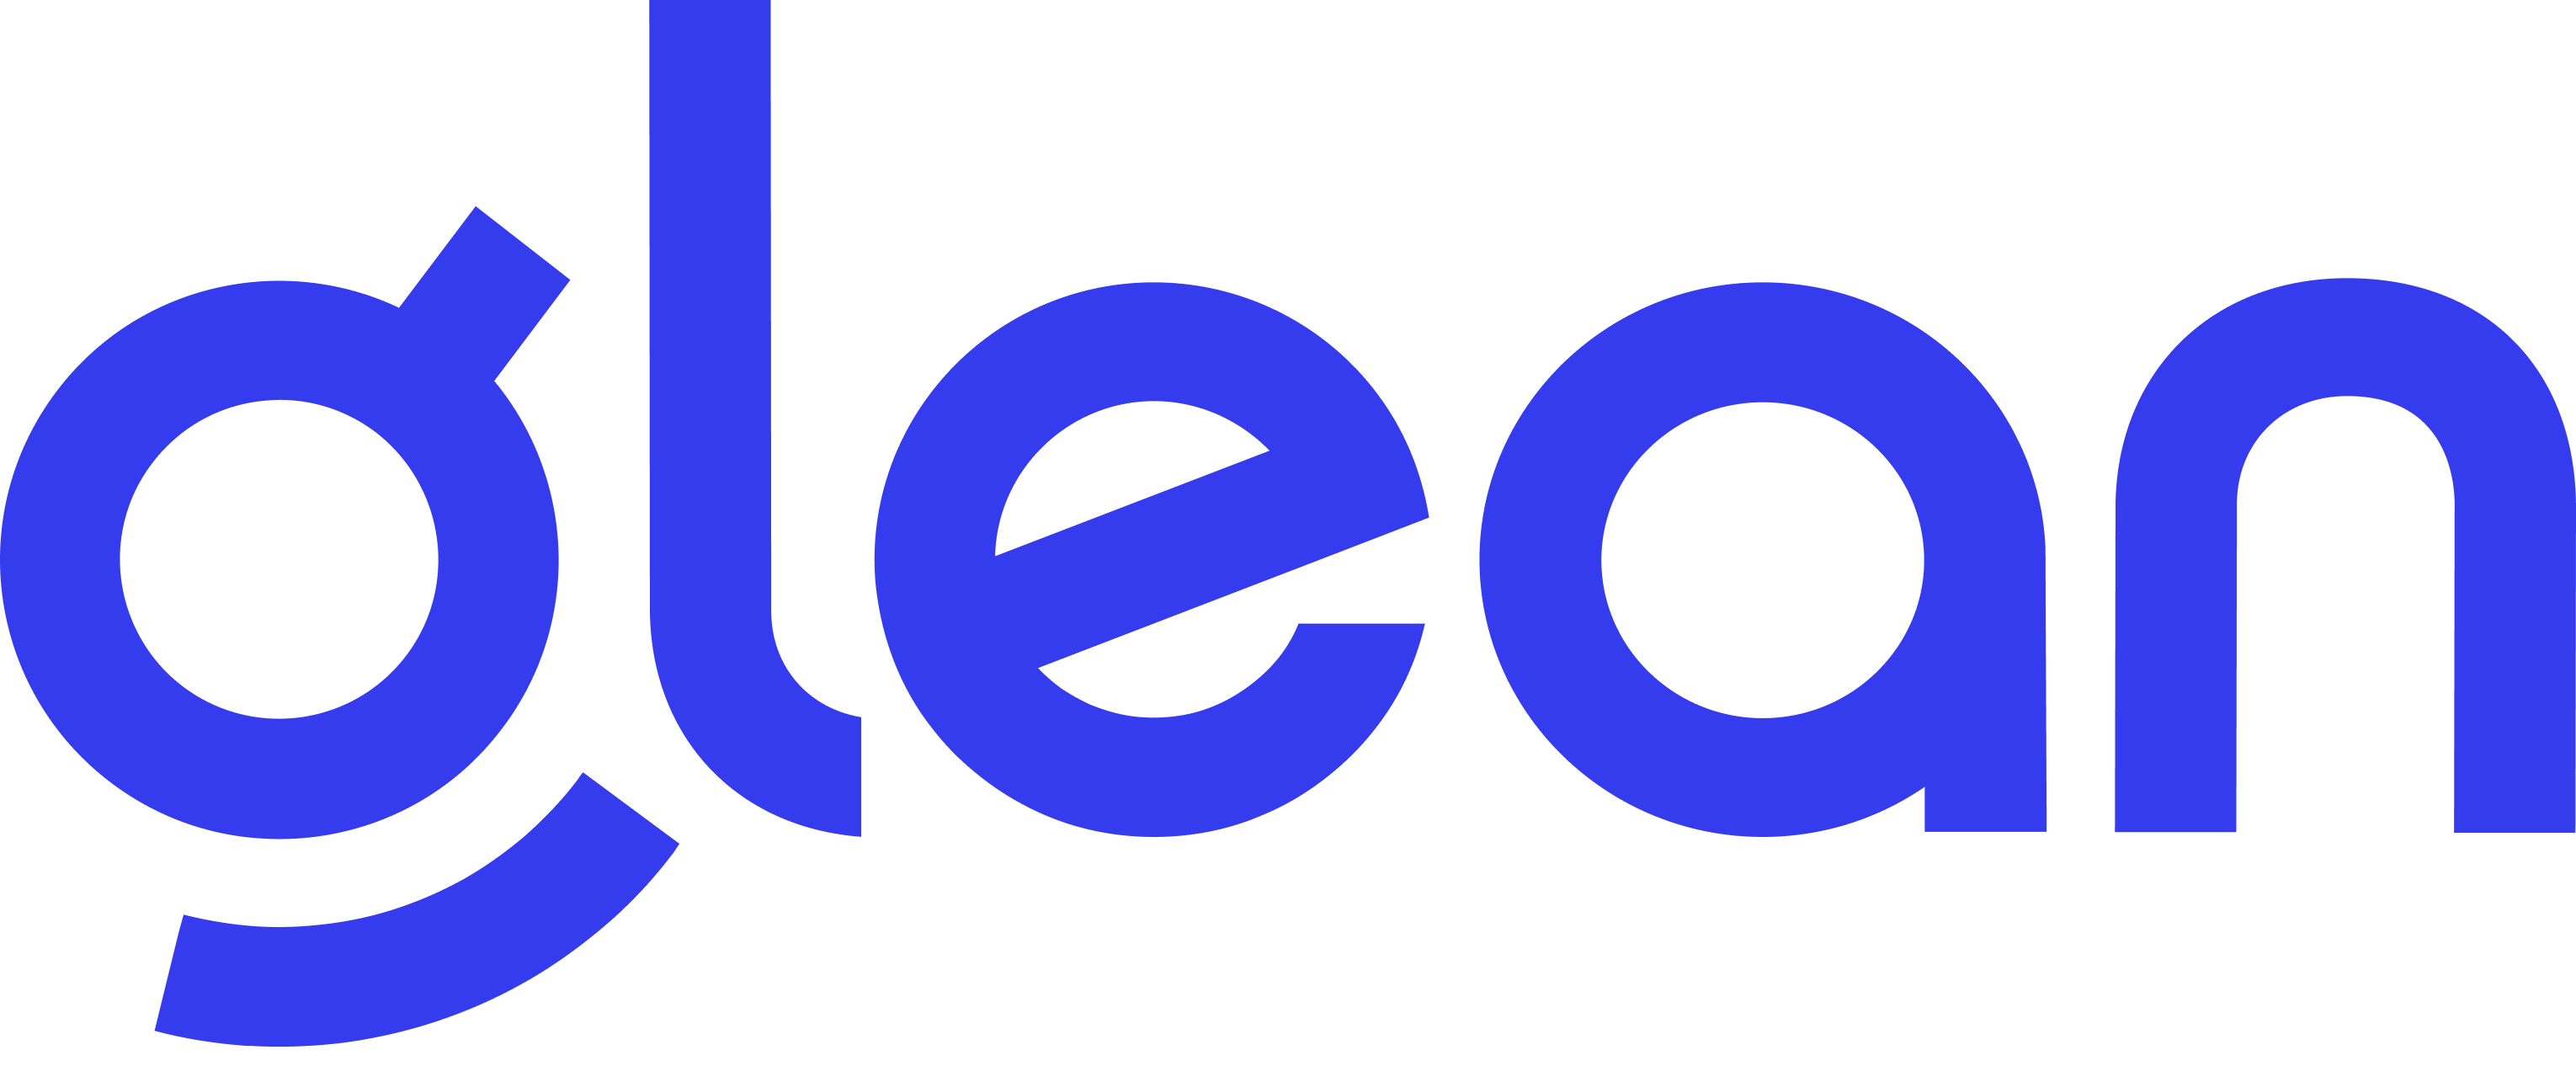 Glean Logo Lockup.png